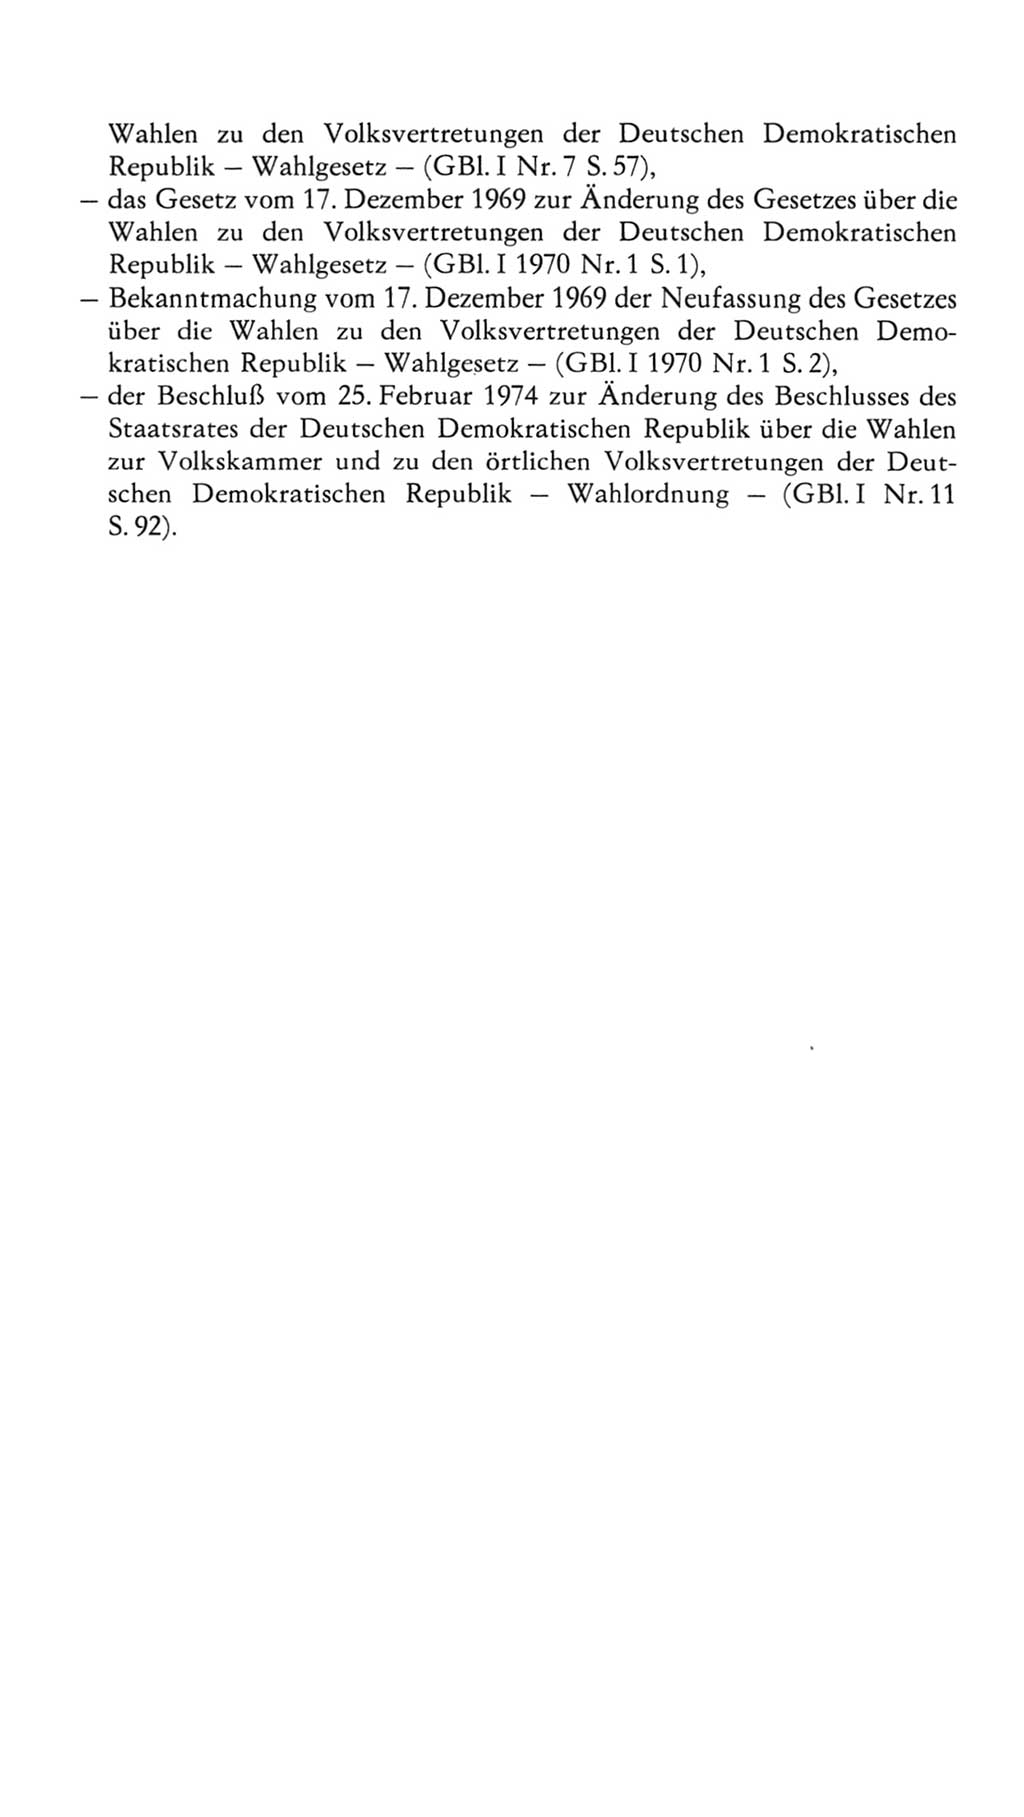 Volkskammer (VK) der Deutschen Demokratischen Republik (DDR), 7. Wahlperiode 1976-1981, Seite 25 (VK. DDR 7. WP. 1976-1981, S. 25)